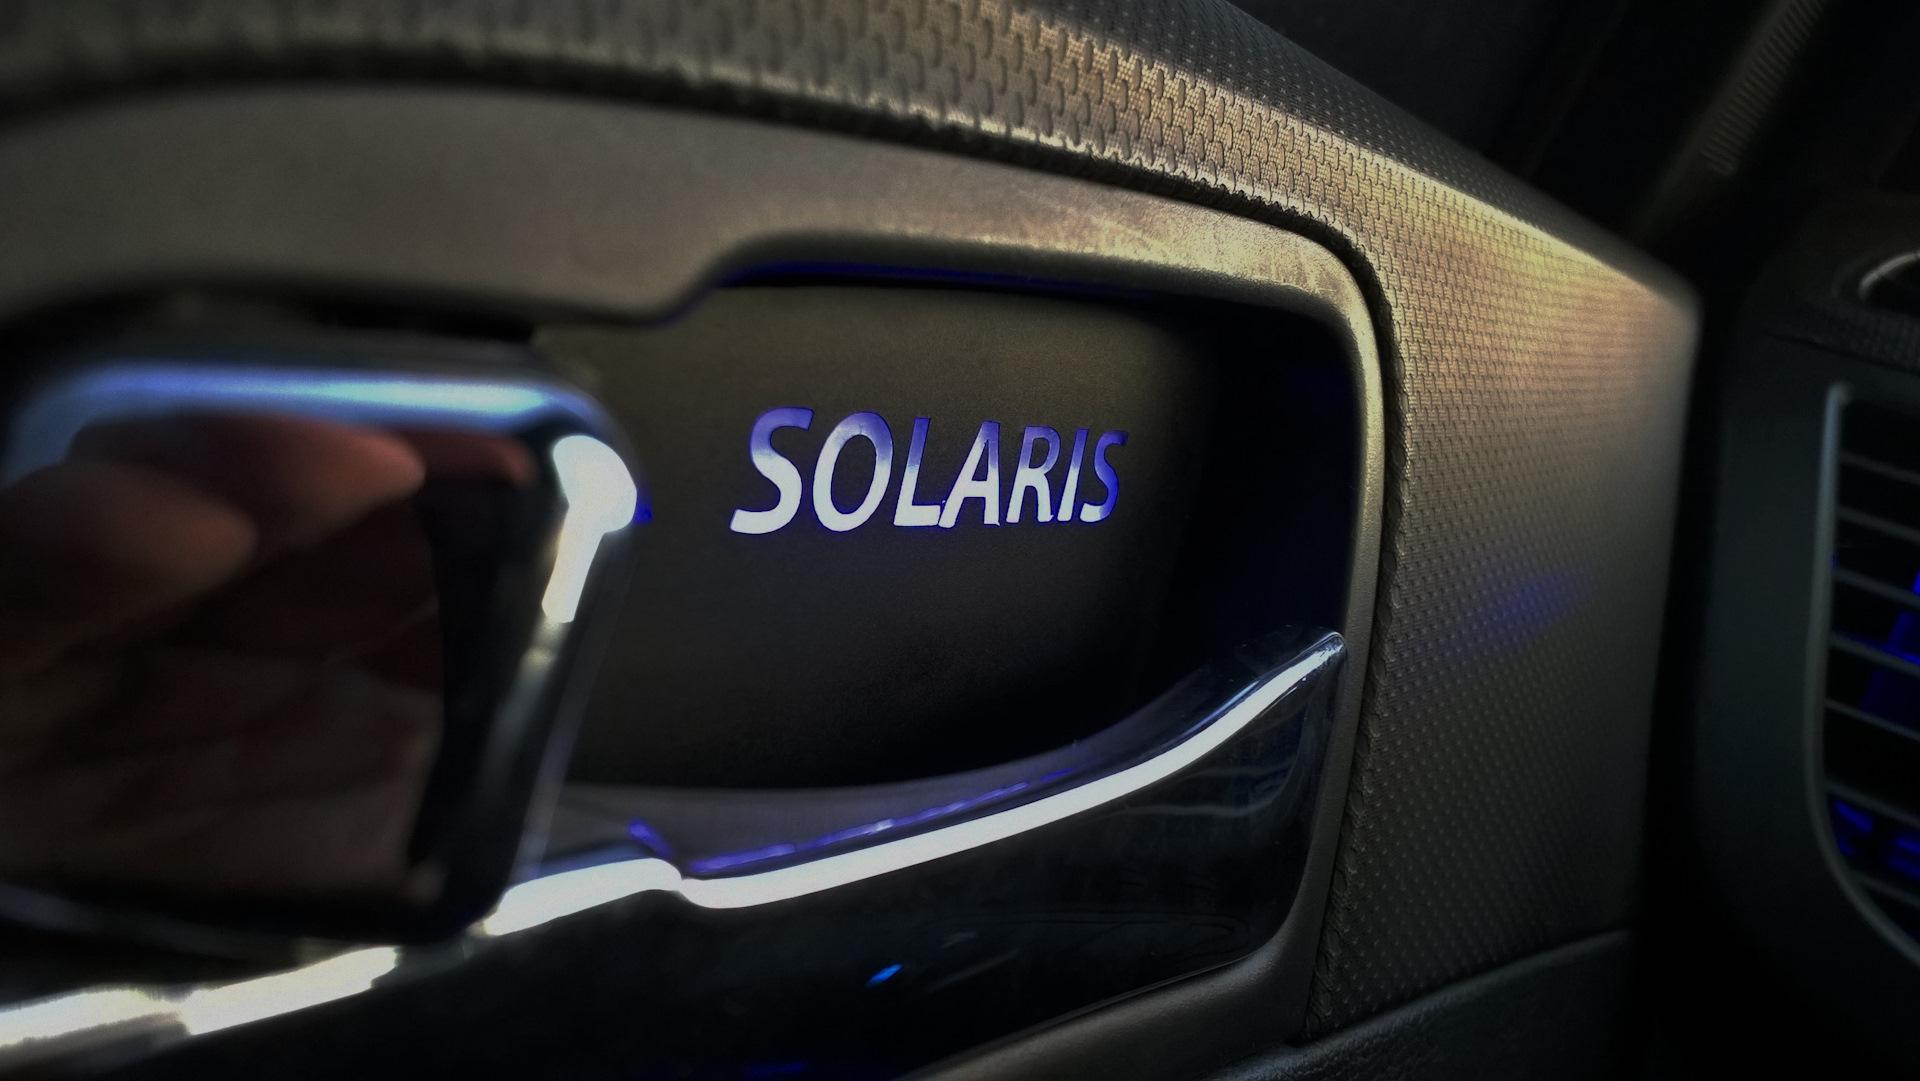 Дверная ручка хендай солярис. Подсветка ручек Hyundai Solaris. Подсветка дверных ручек автомобиля Hyundai Solaris. Подсветка ручек Хендай Солярис 2012. Подсветка ручек дверей Хендай Солярис 2011.